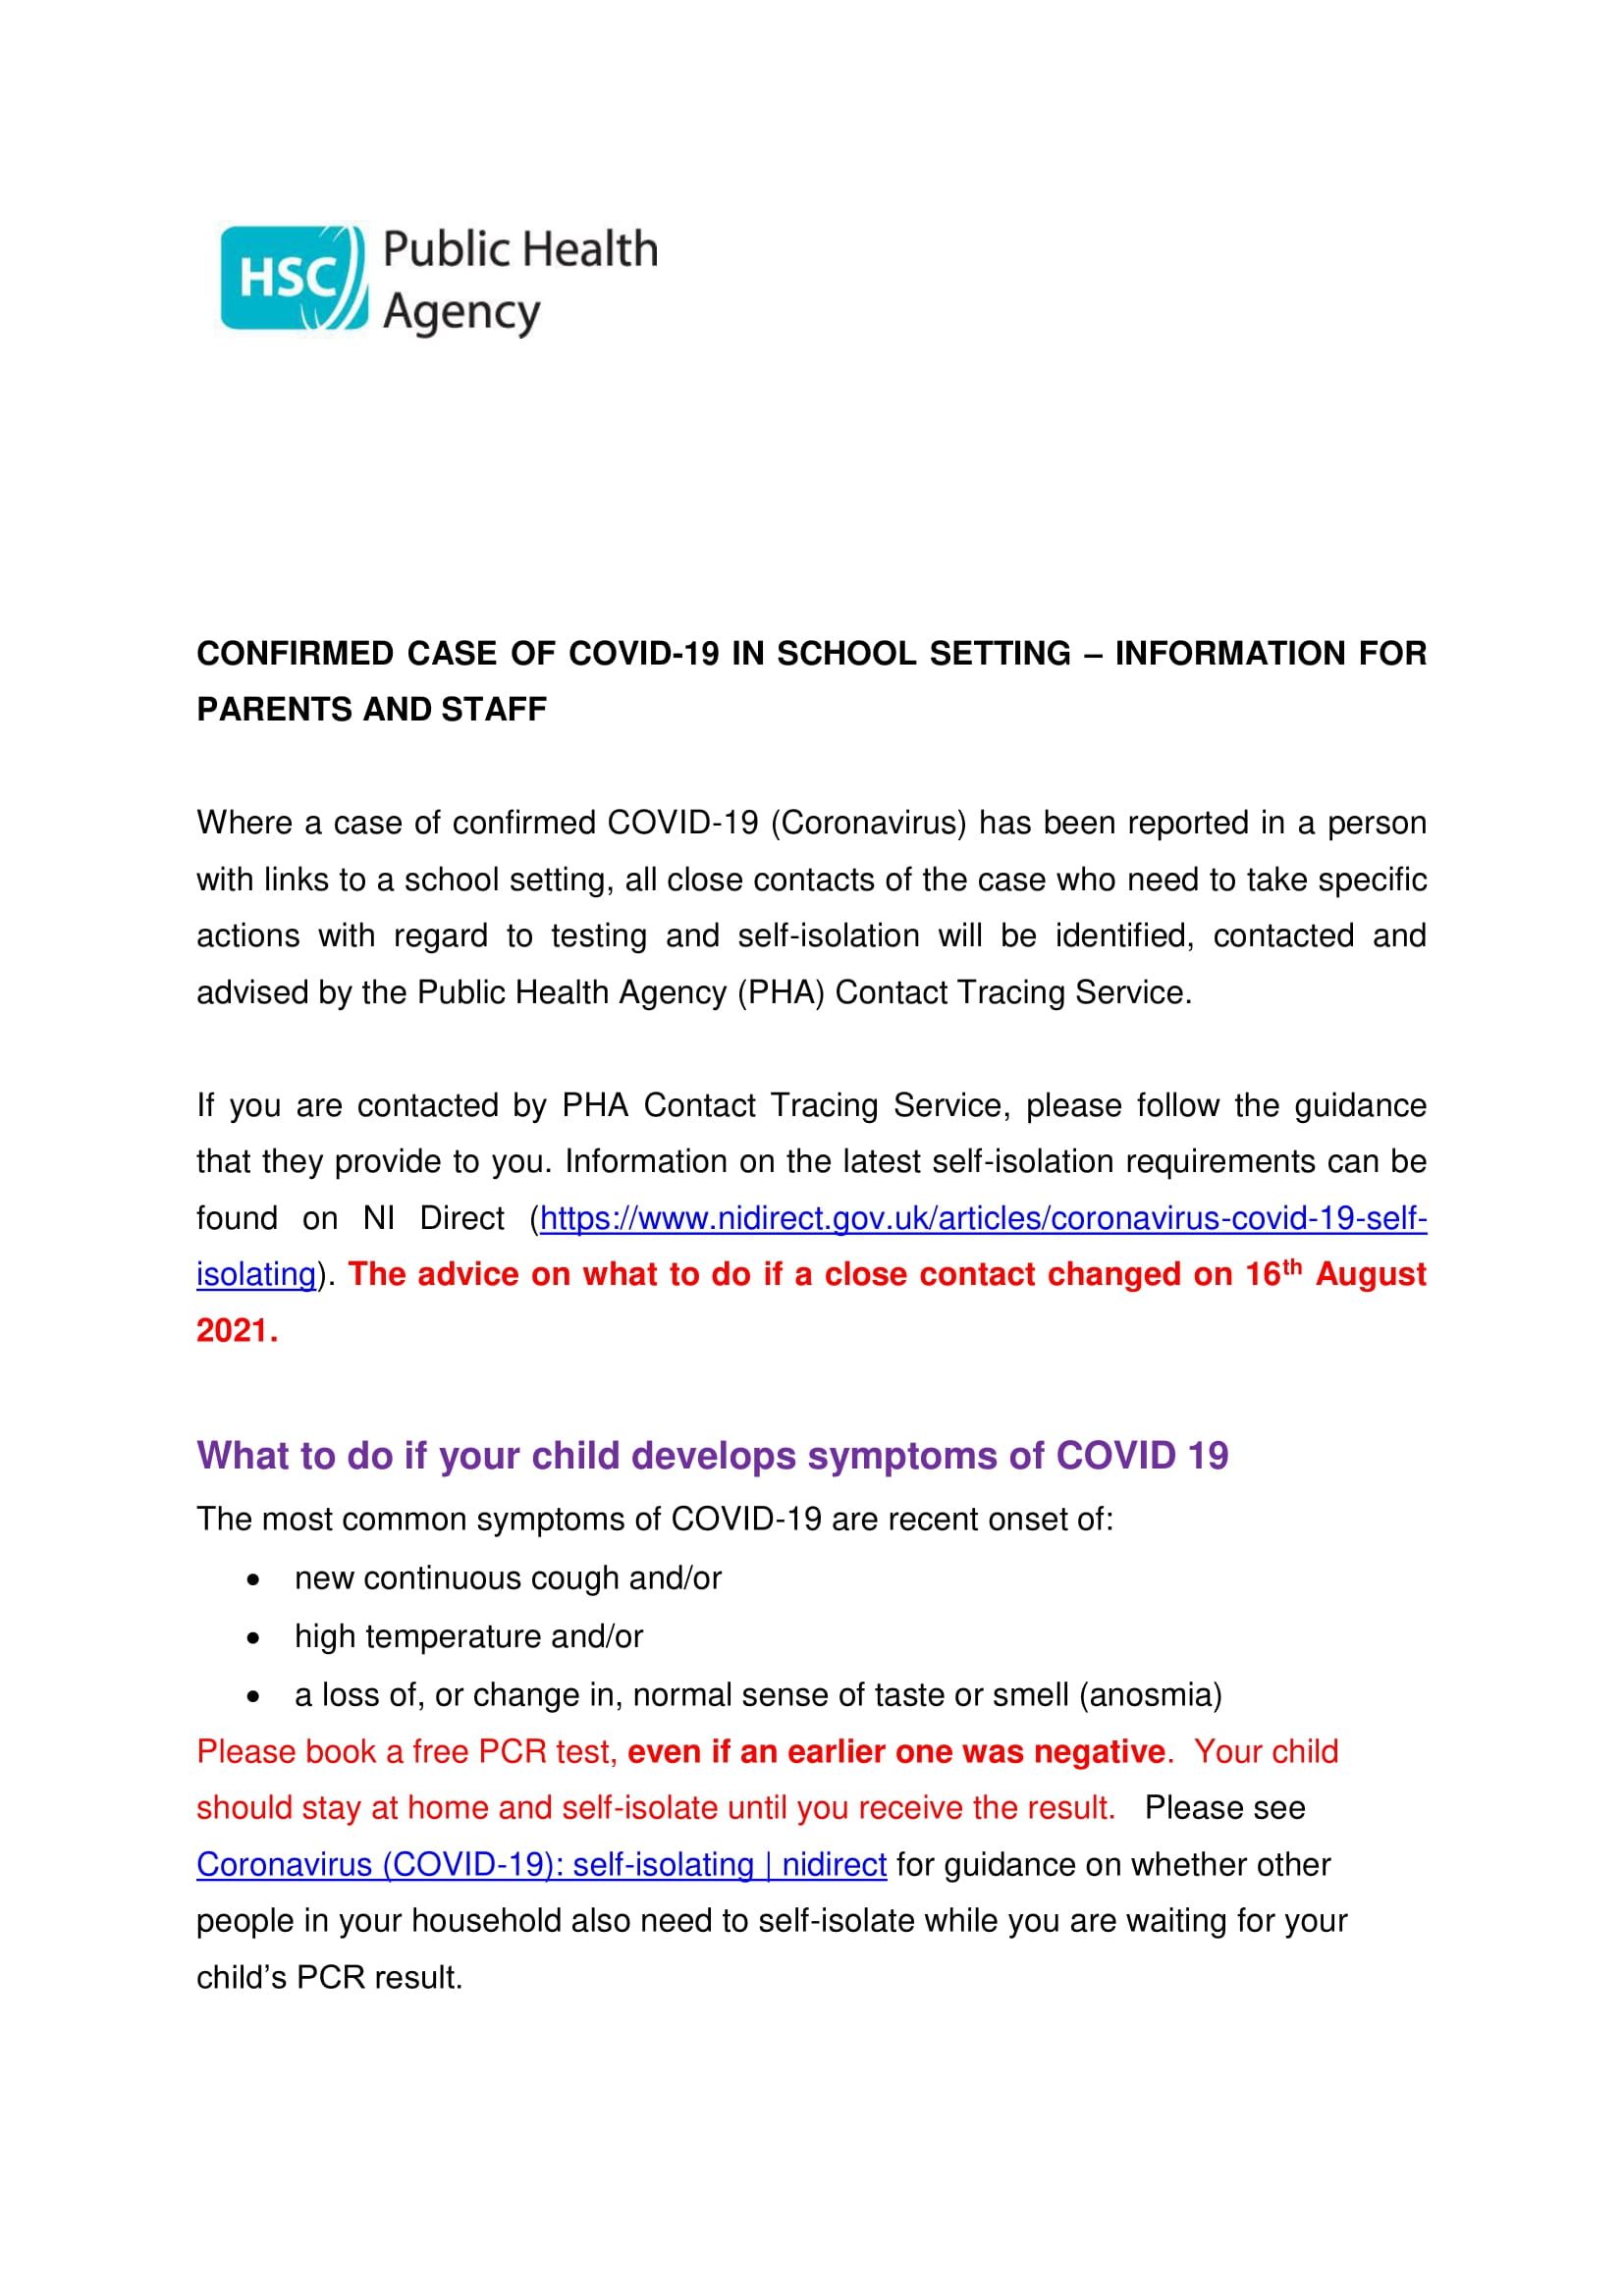 Information for Parents and Staff - Confirmed Case Alert Letter